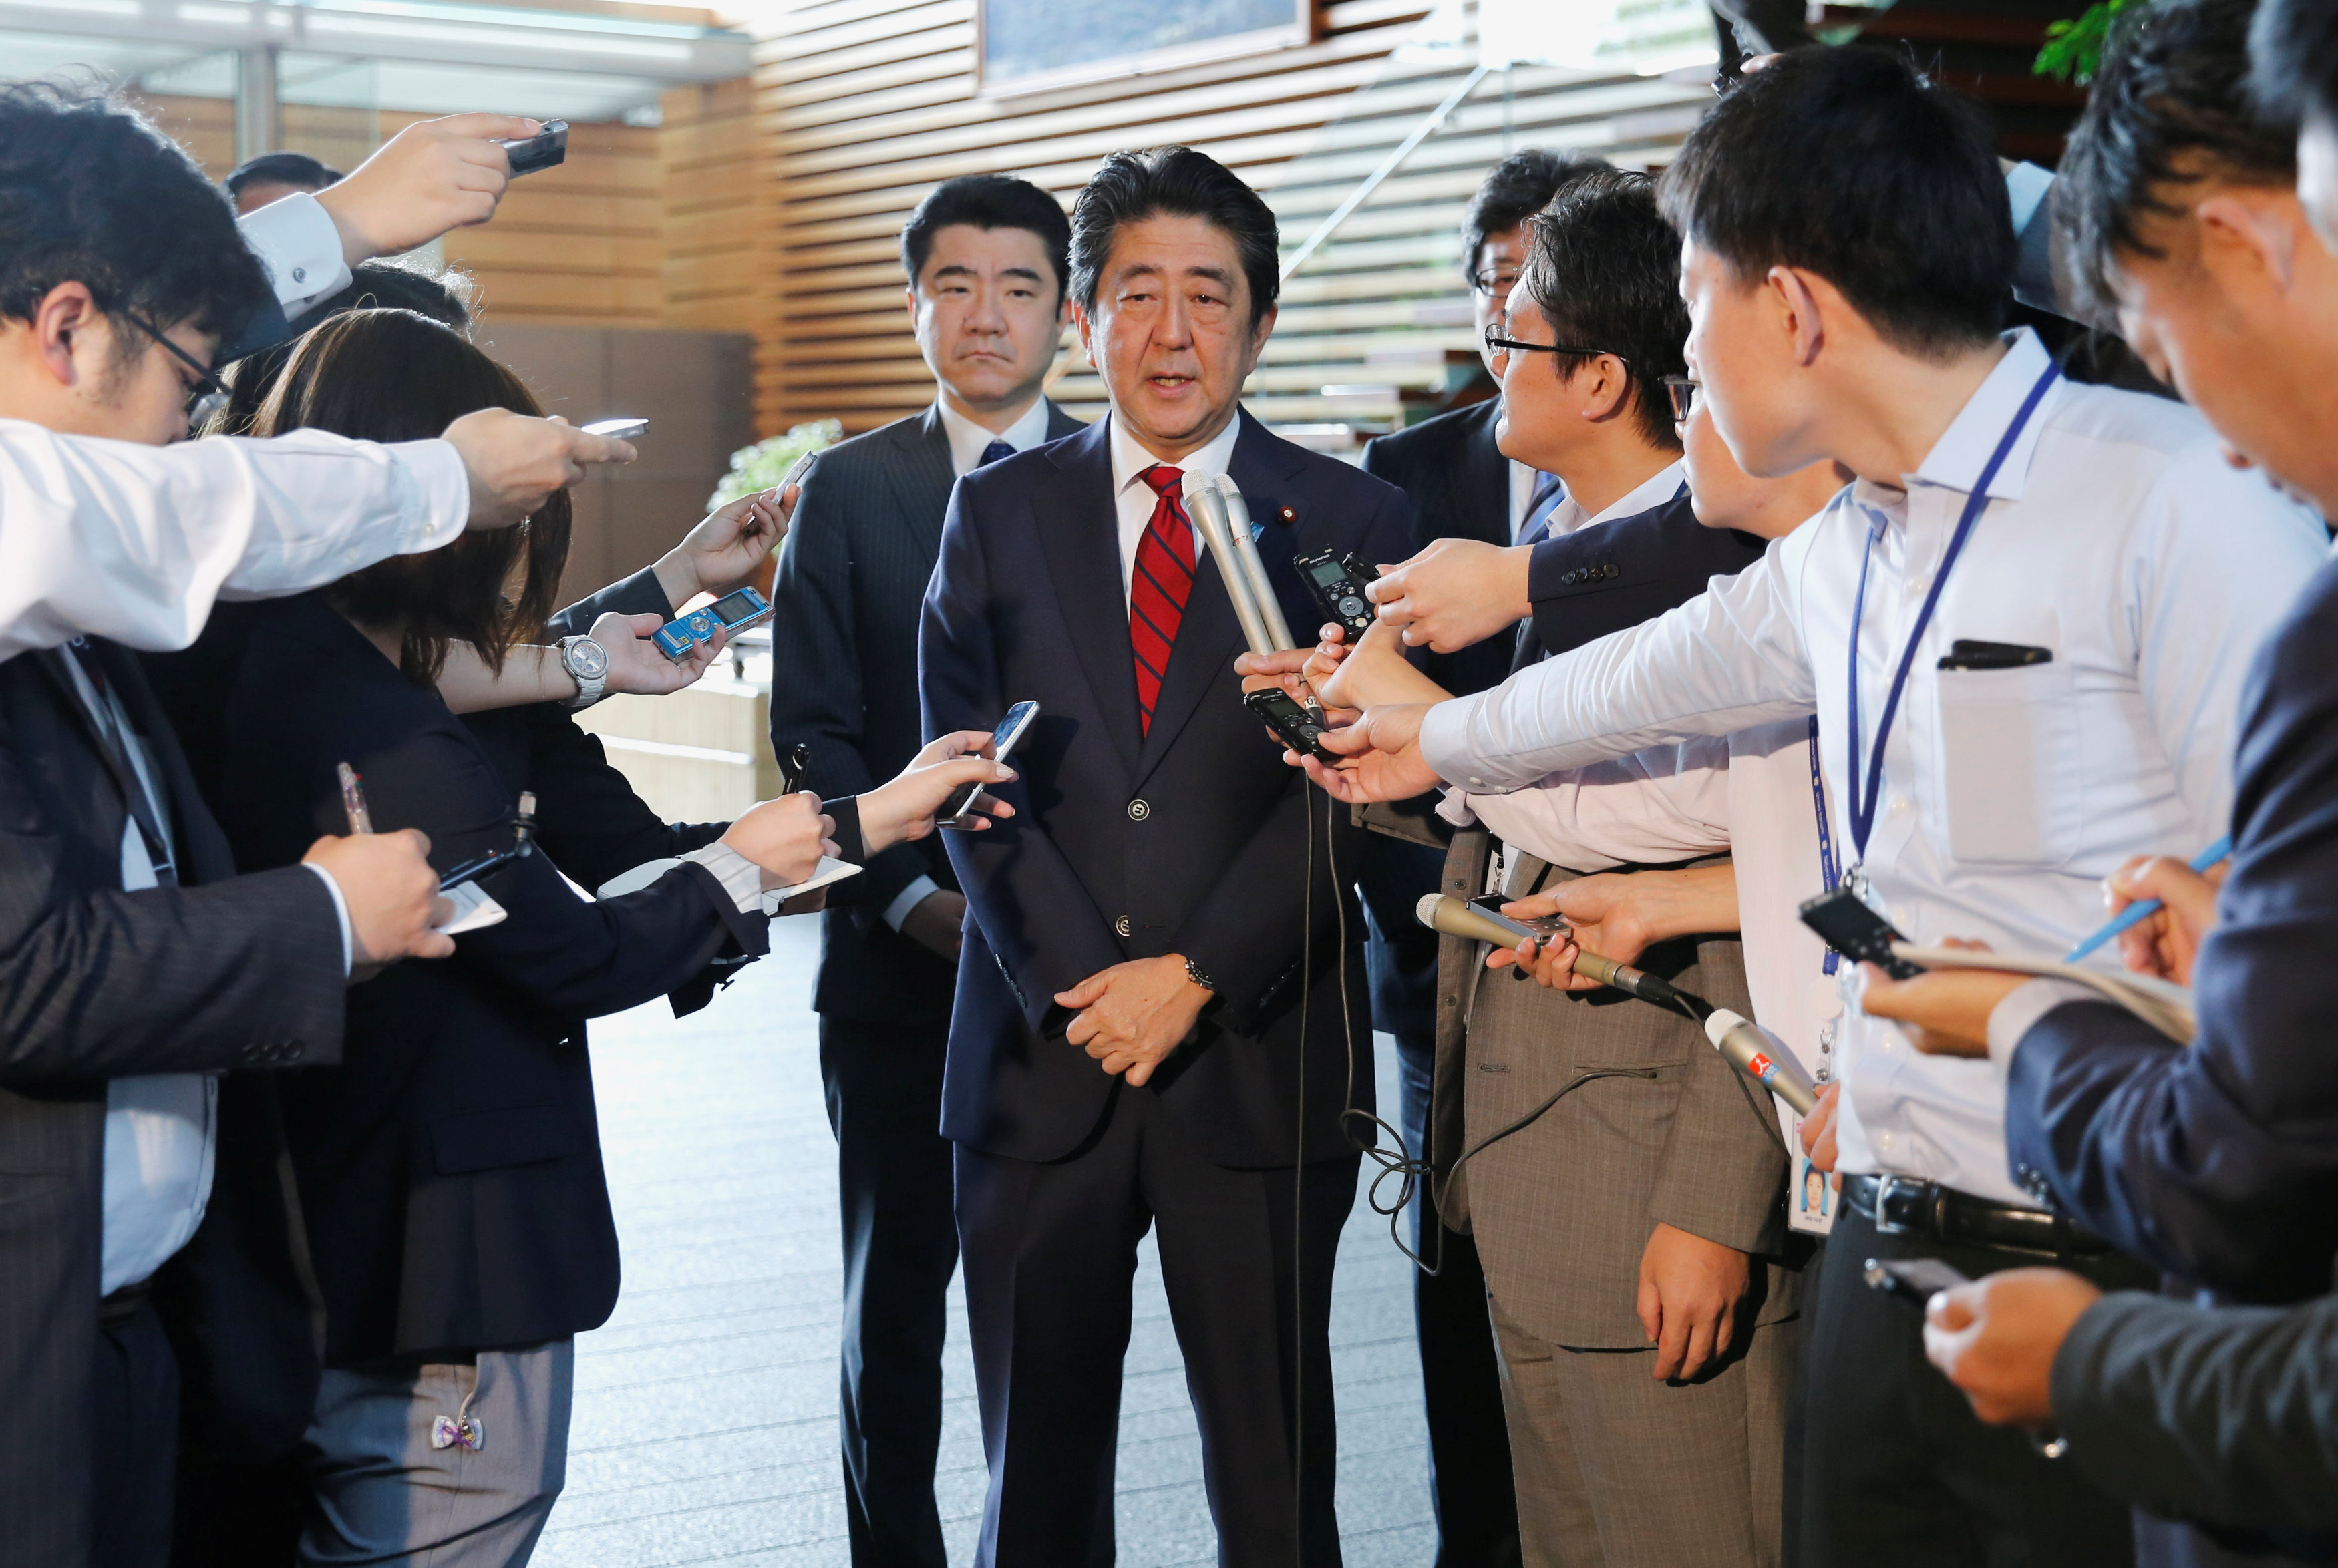 رئيس الوزراء اليابانى يتحدث إلى الصحفيين